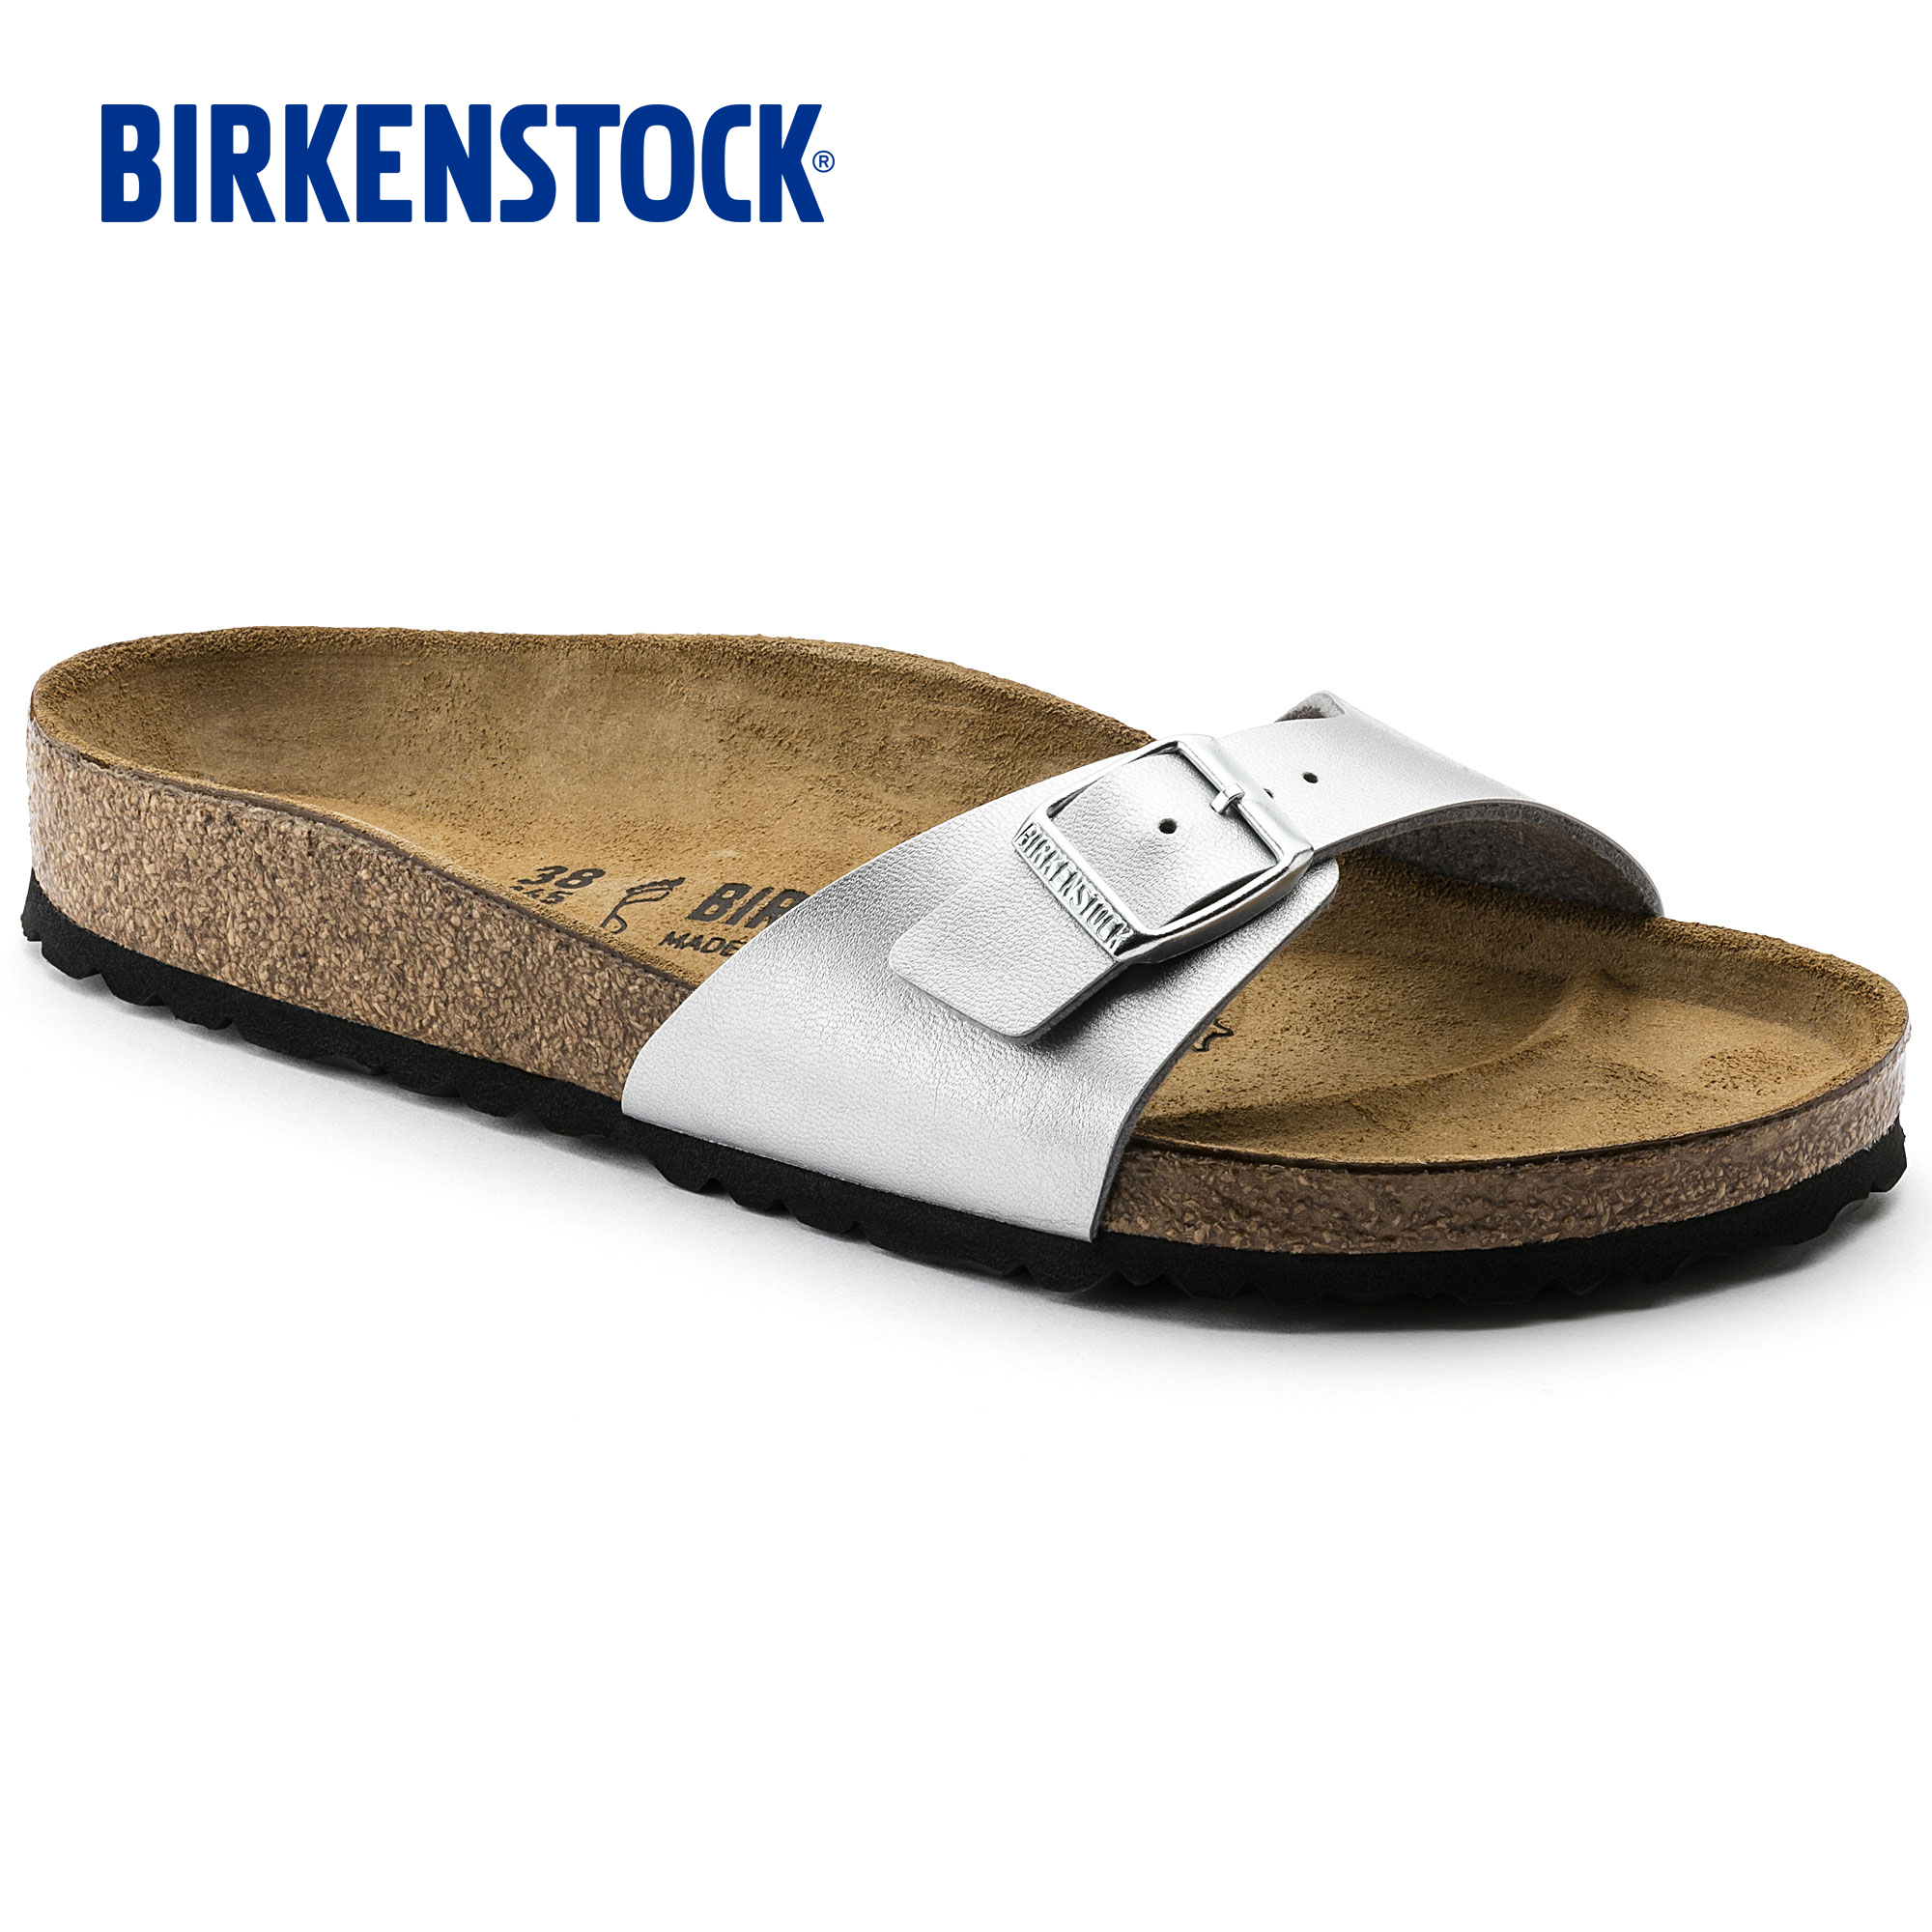 birkenstock sale narrow